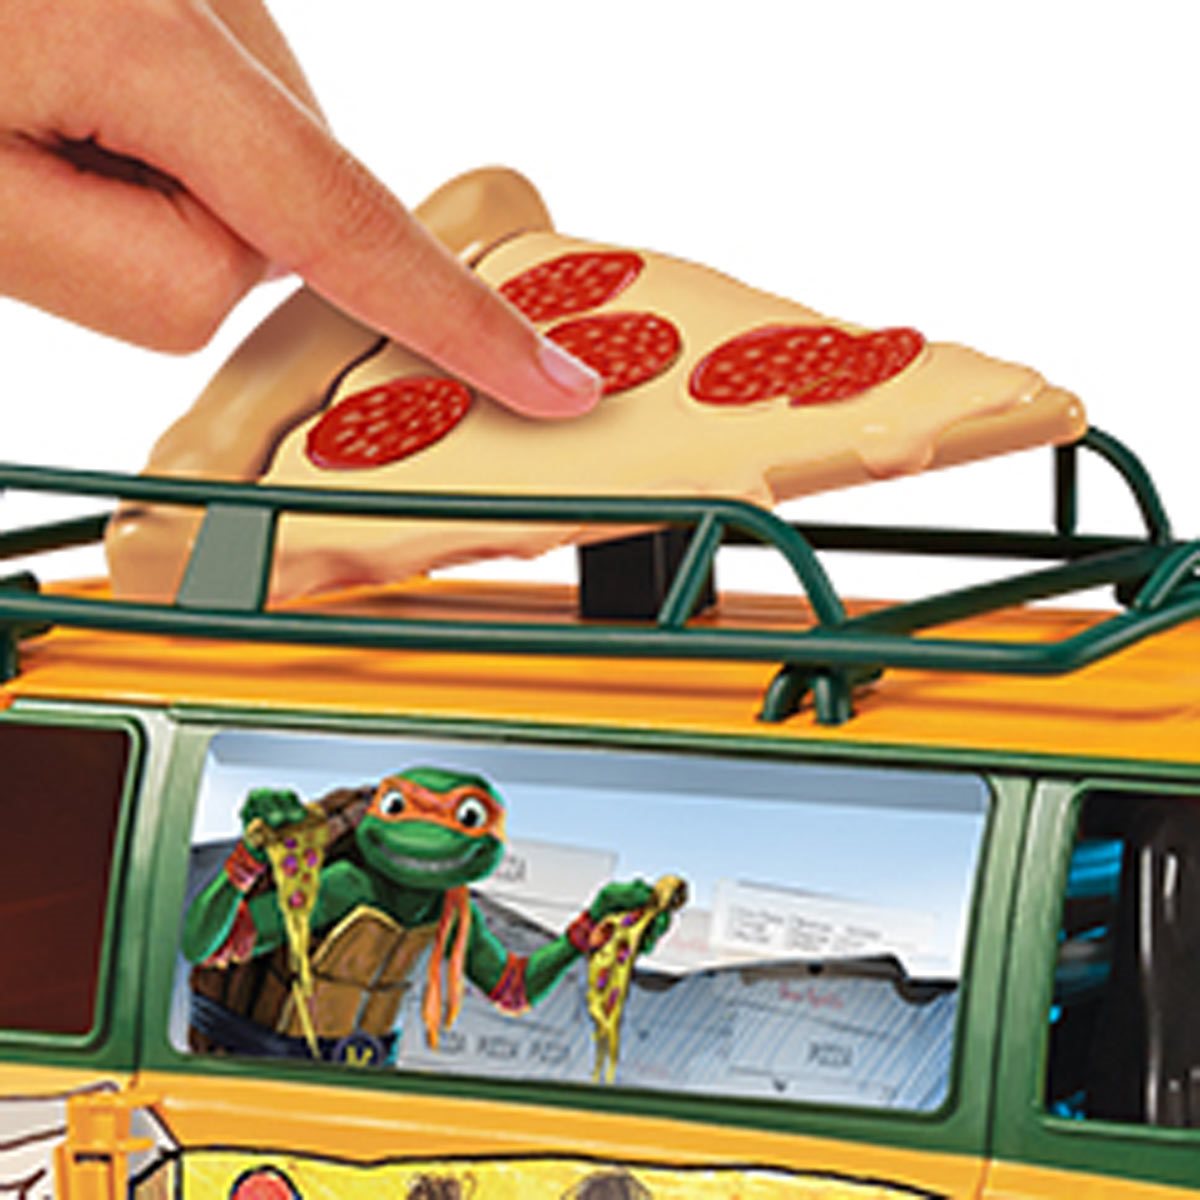 Tortue Ninja Camion - Pizza Fire Van